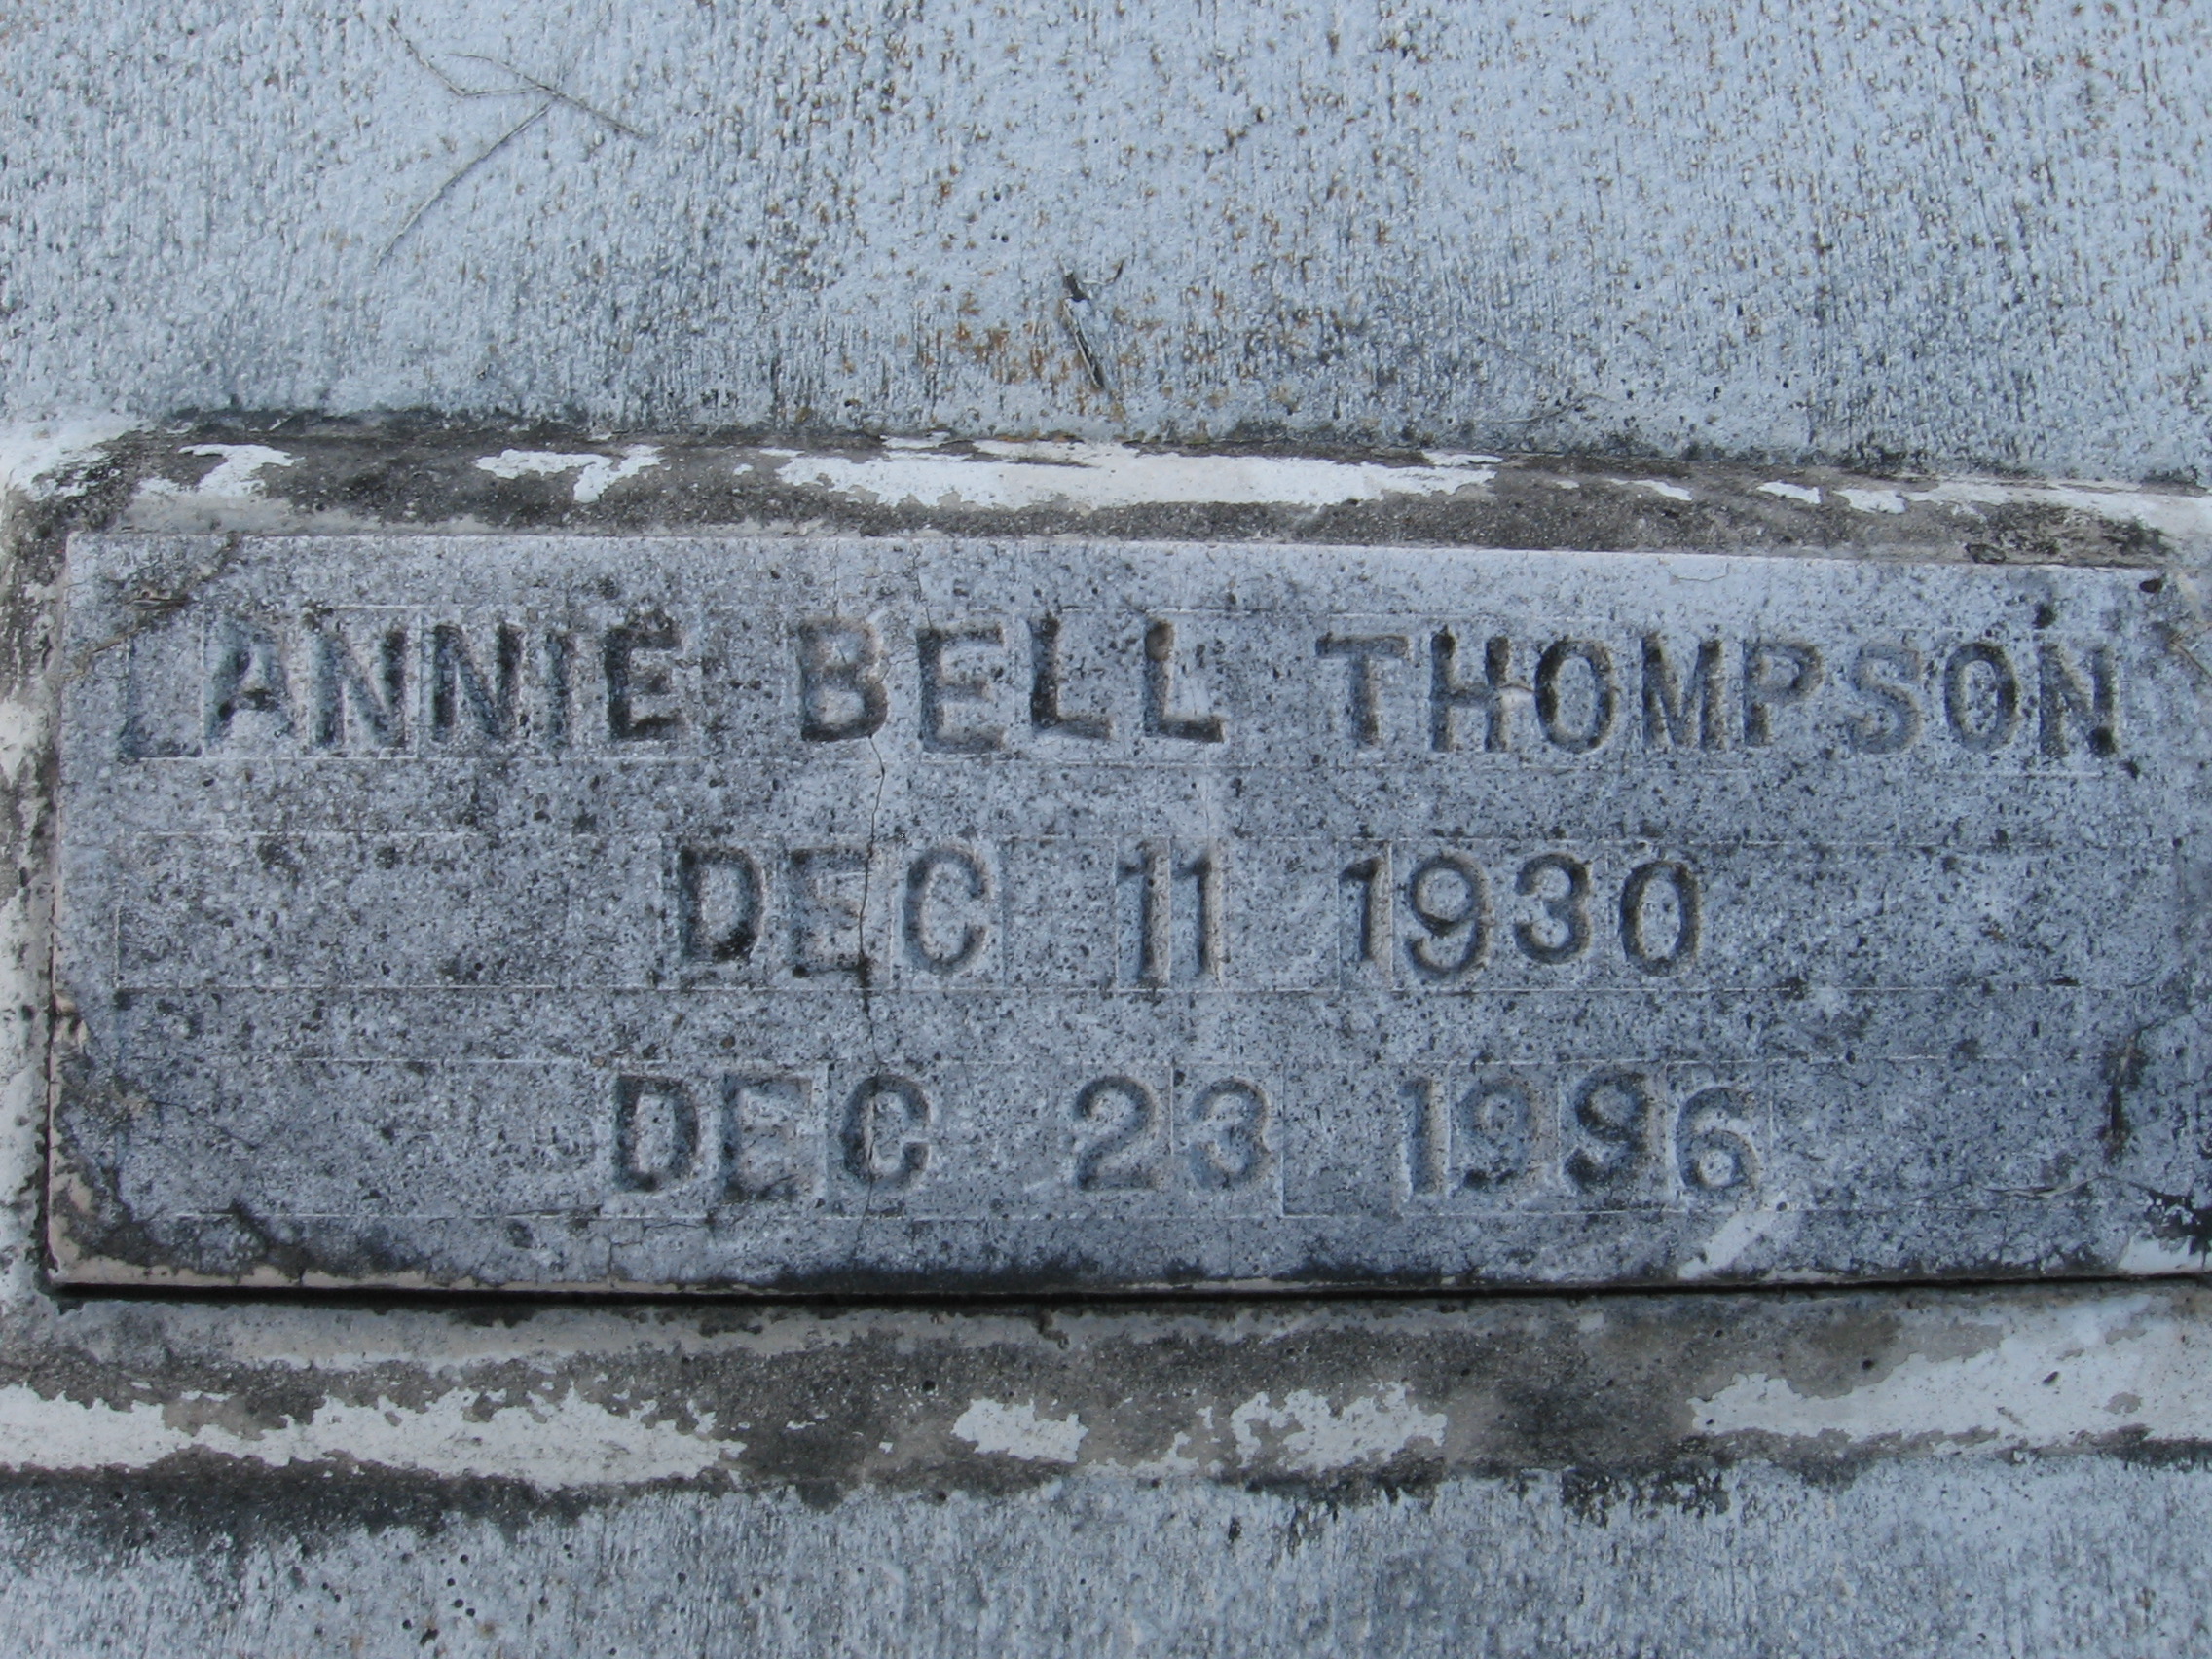 Annie Bell Thompson